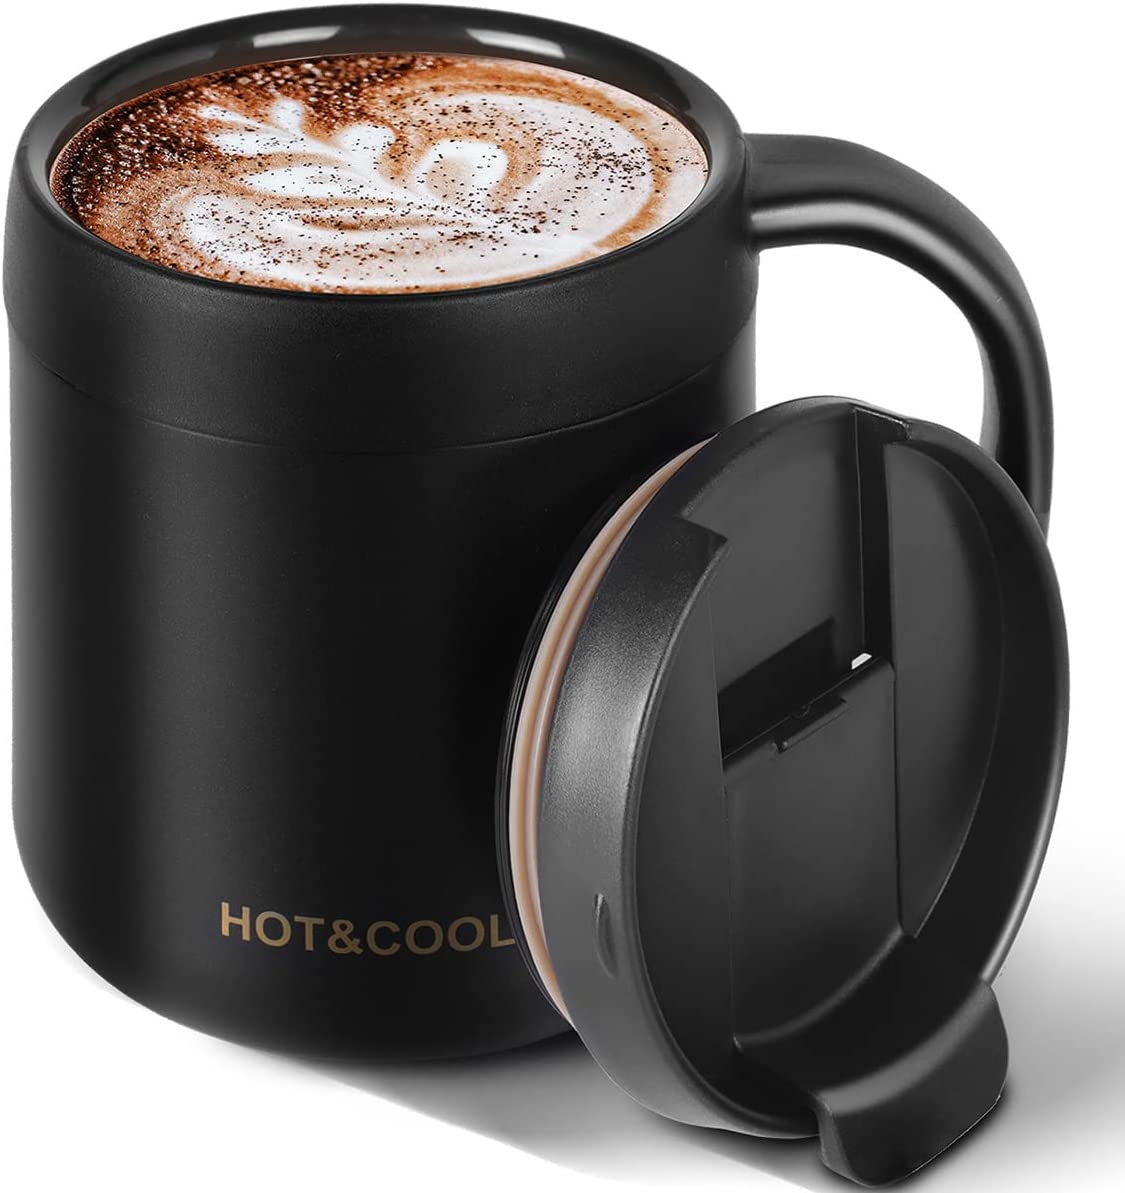 12OZ Reusable Insulated Mug Stainless Steel Coffee Mug with Lip, Black